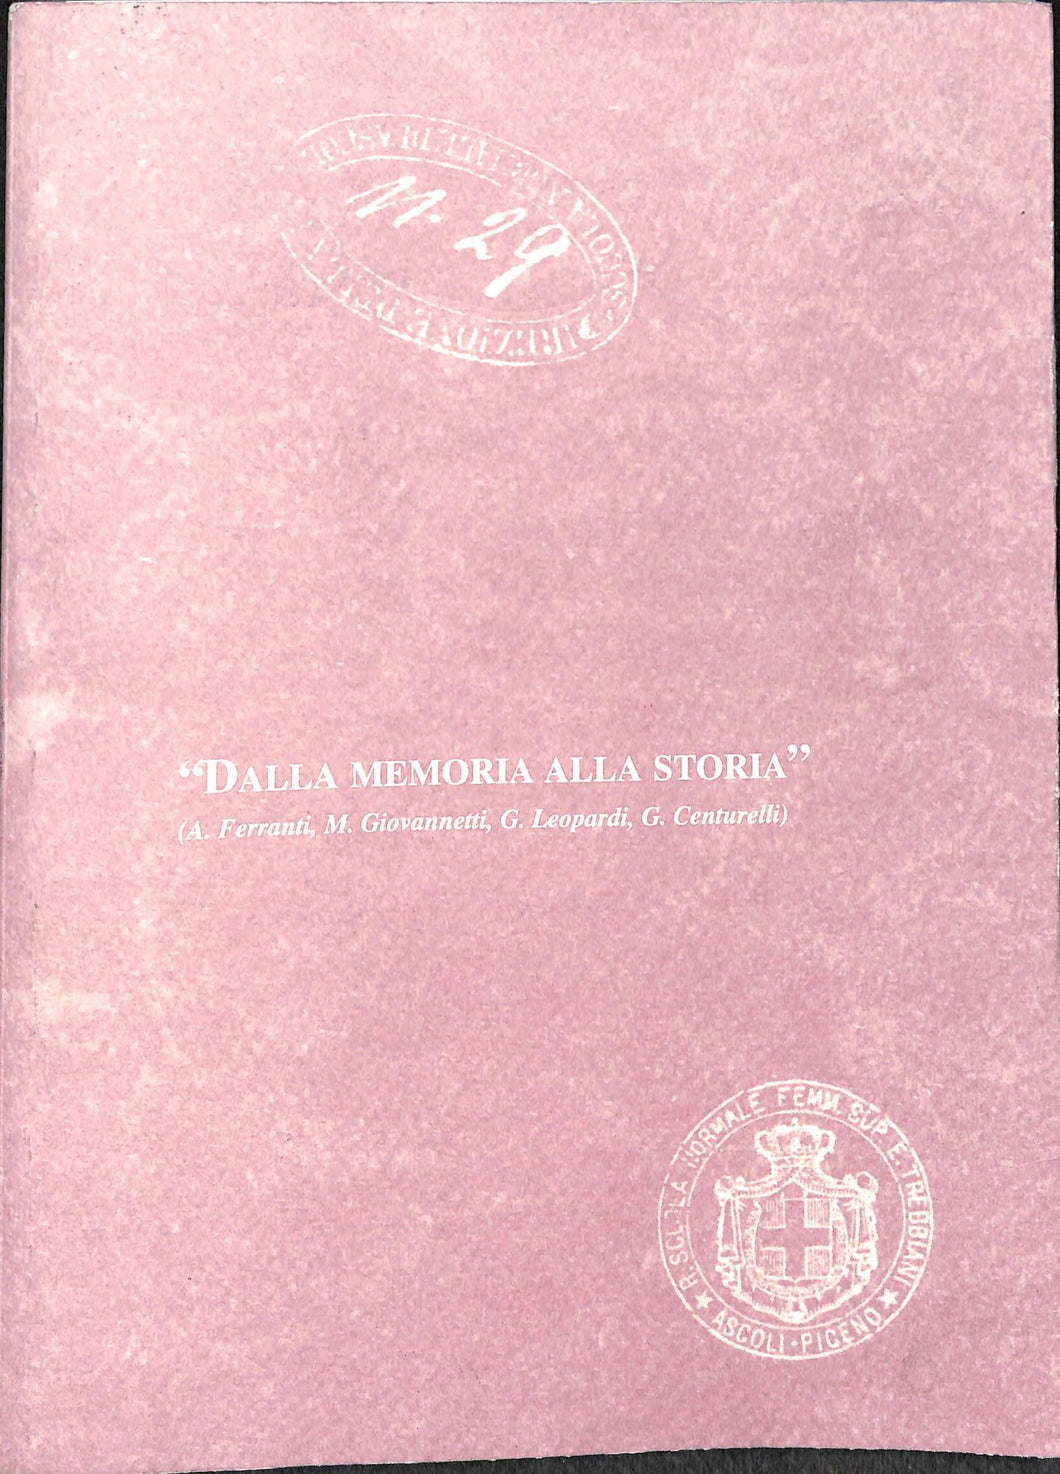 (Marche) Dalla memoria alla storia - A.Ferranti, M.Giovannetti, G.Leopardi, G.Centurelli